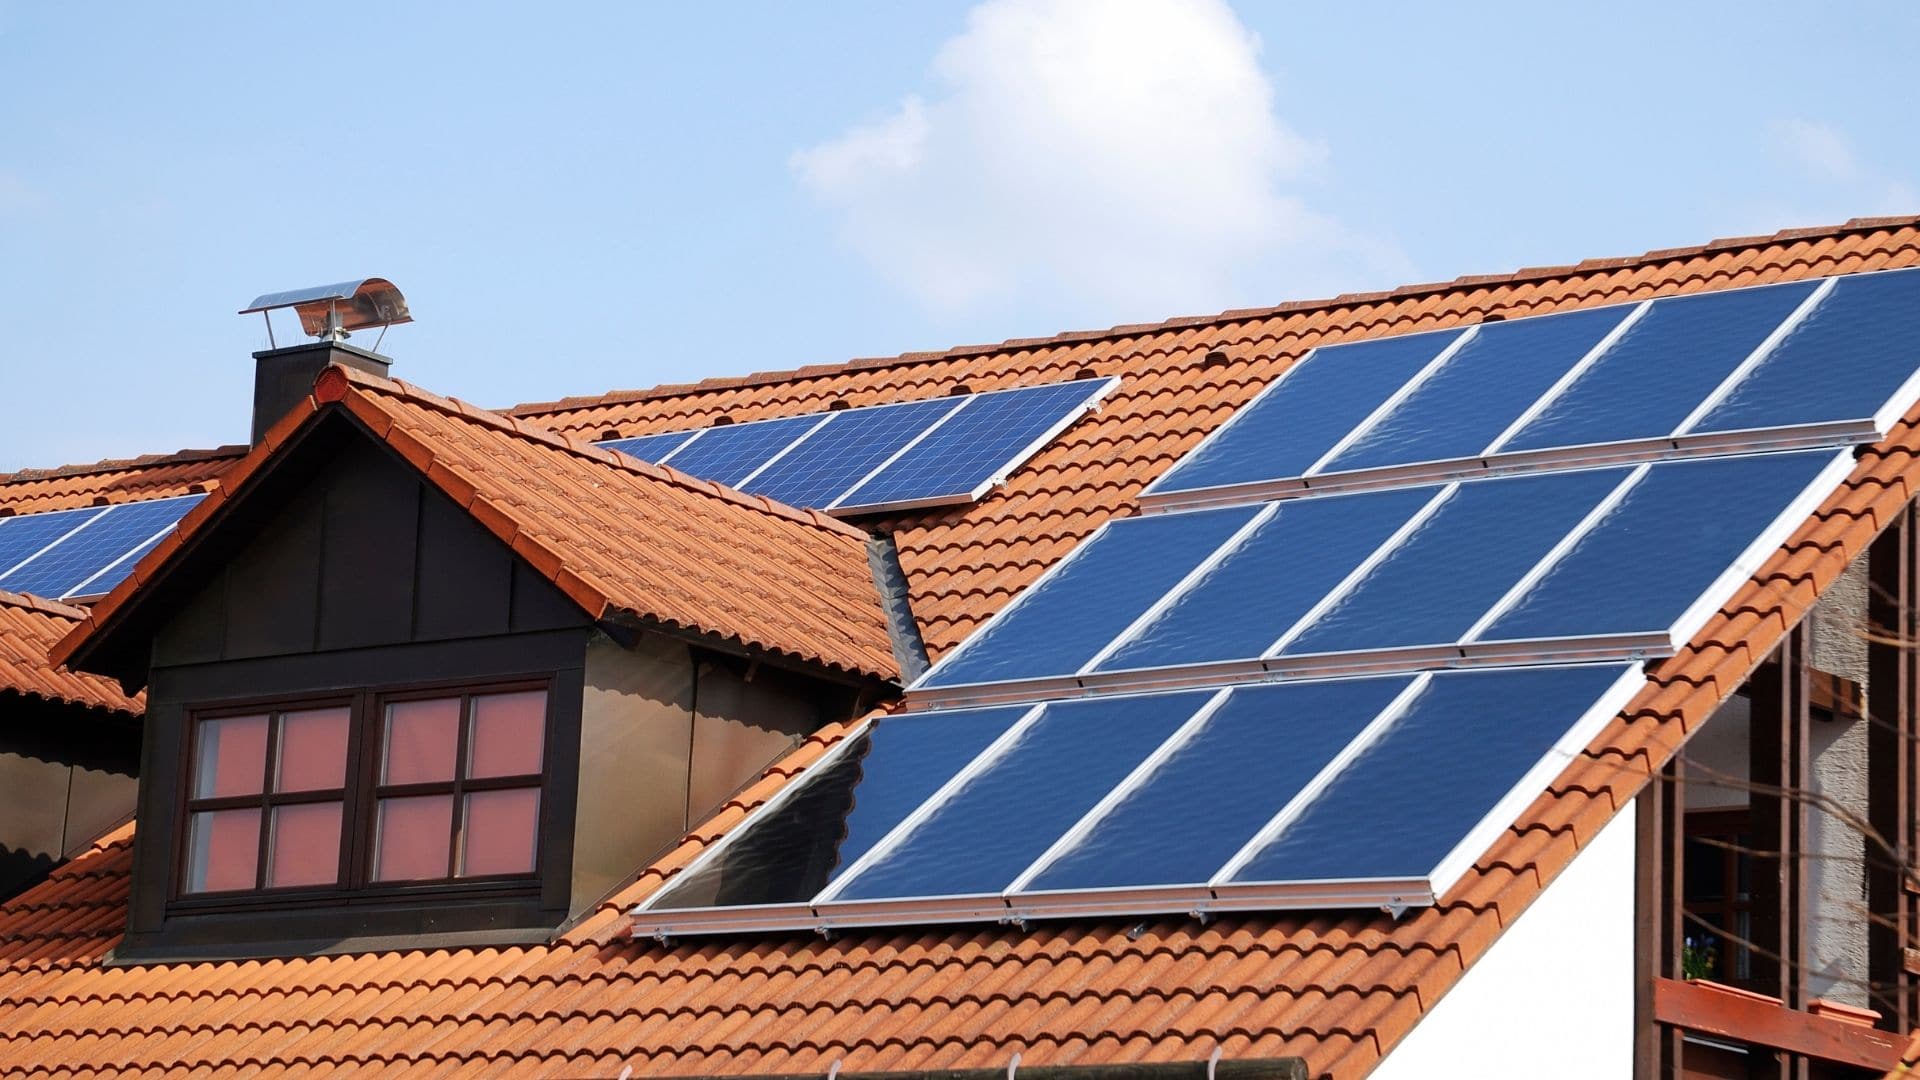 Le panneau solaire photovoltaïque fournit de l'électricité grâce aux cellules photovoltaïques monocristallines et polycristallines qui le composent.